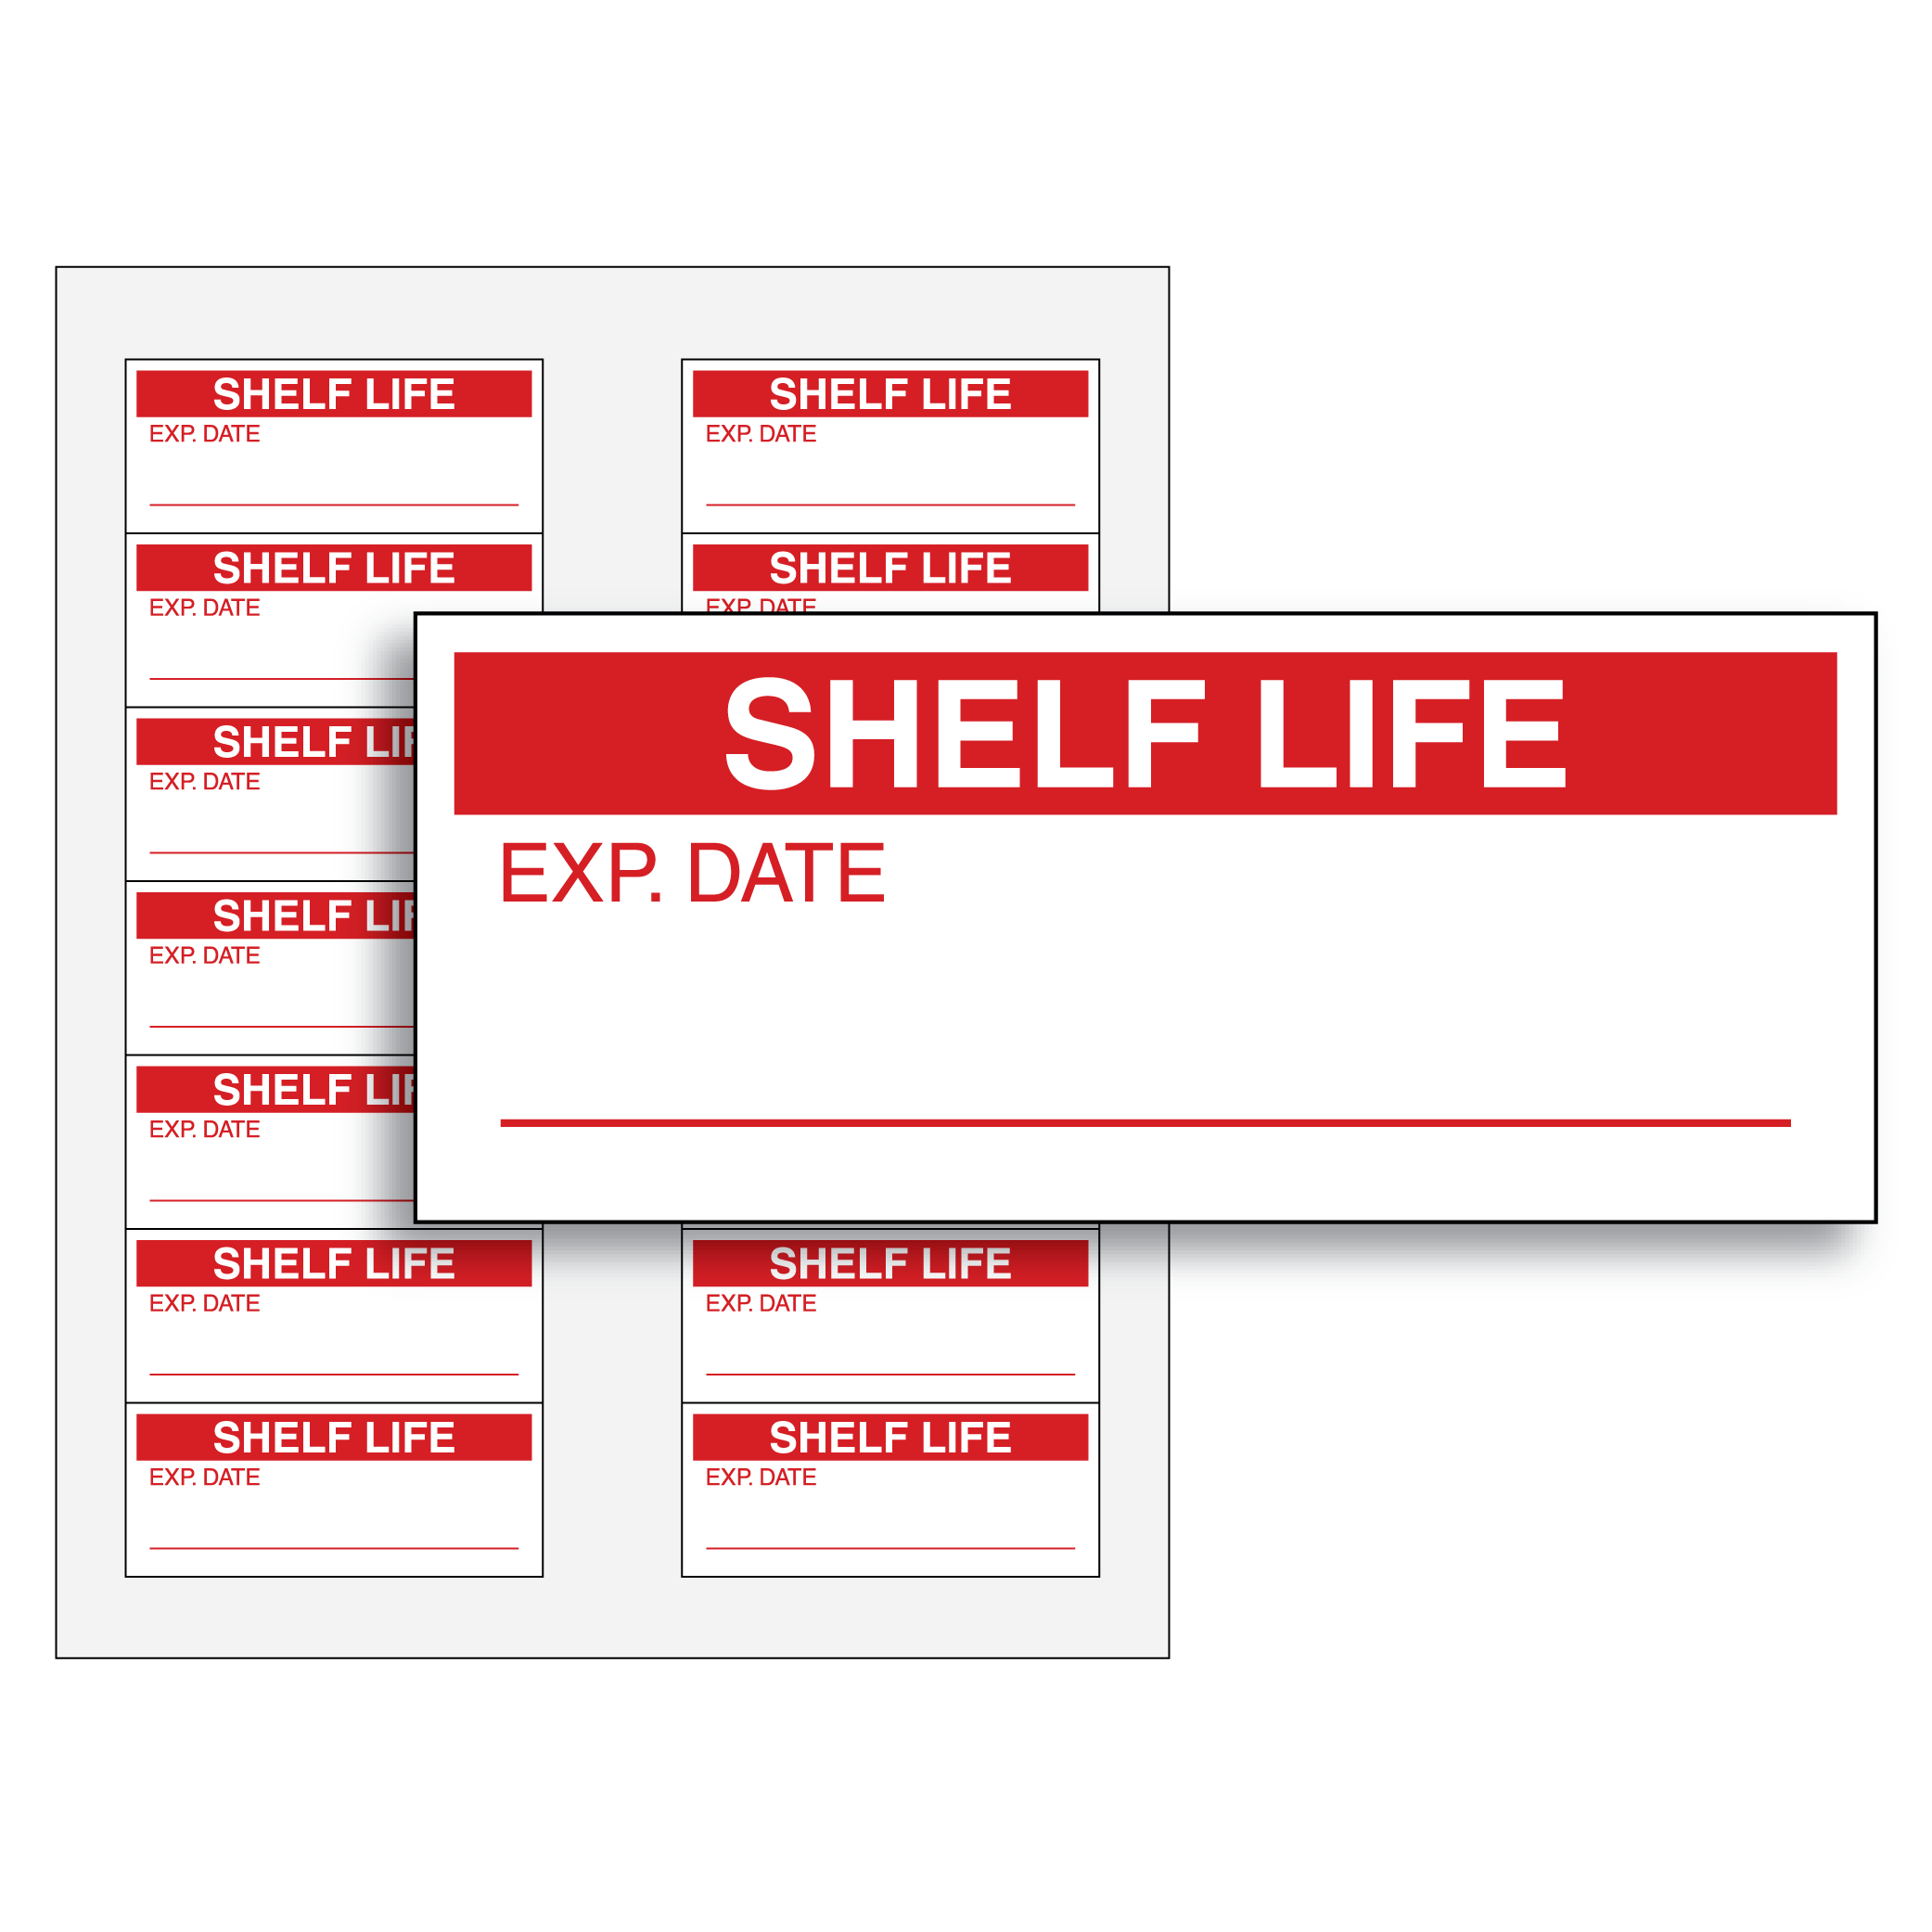 def shelf life